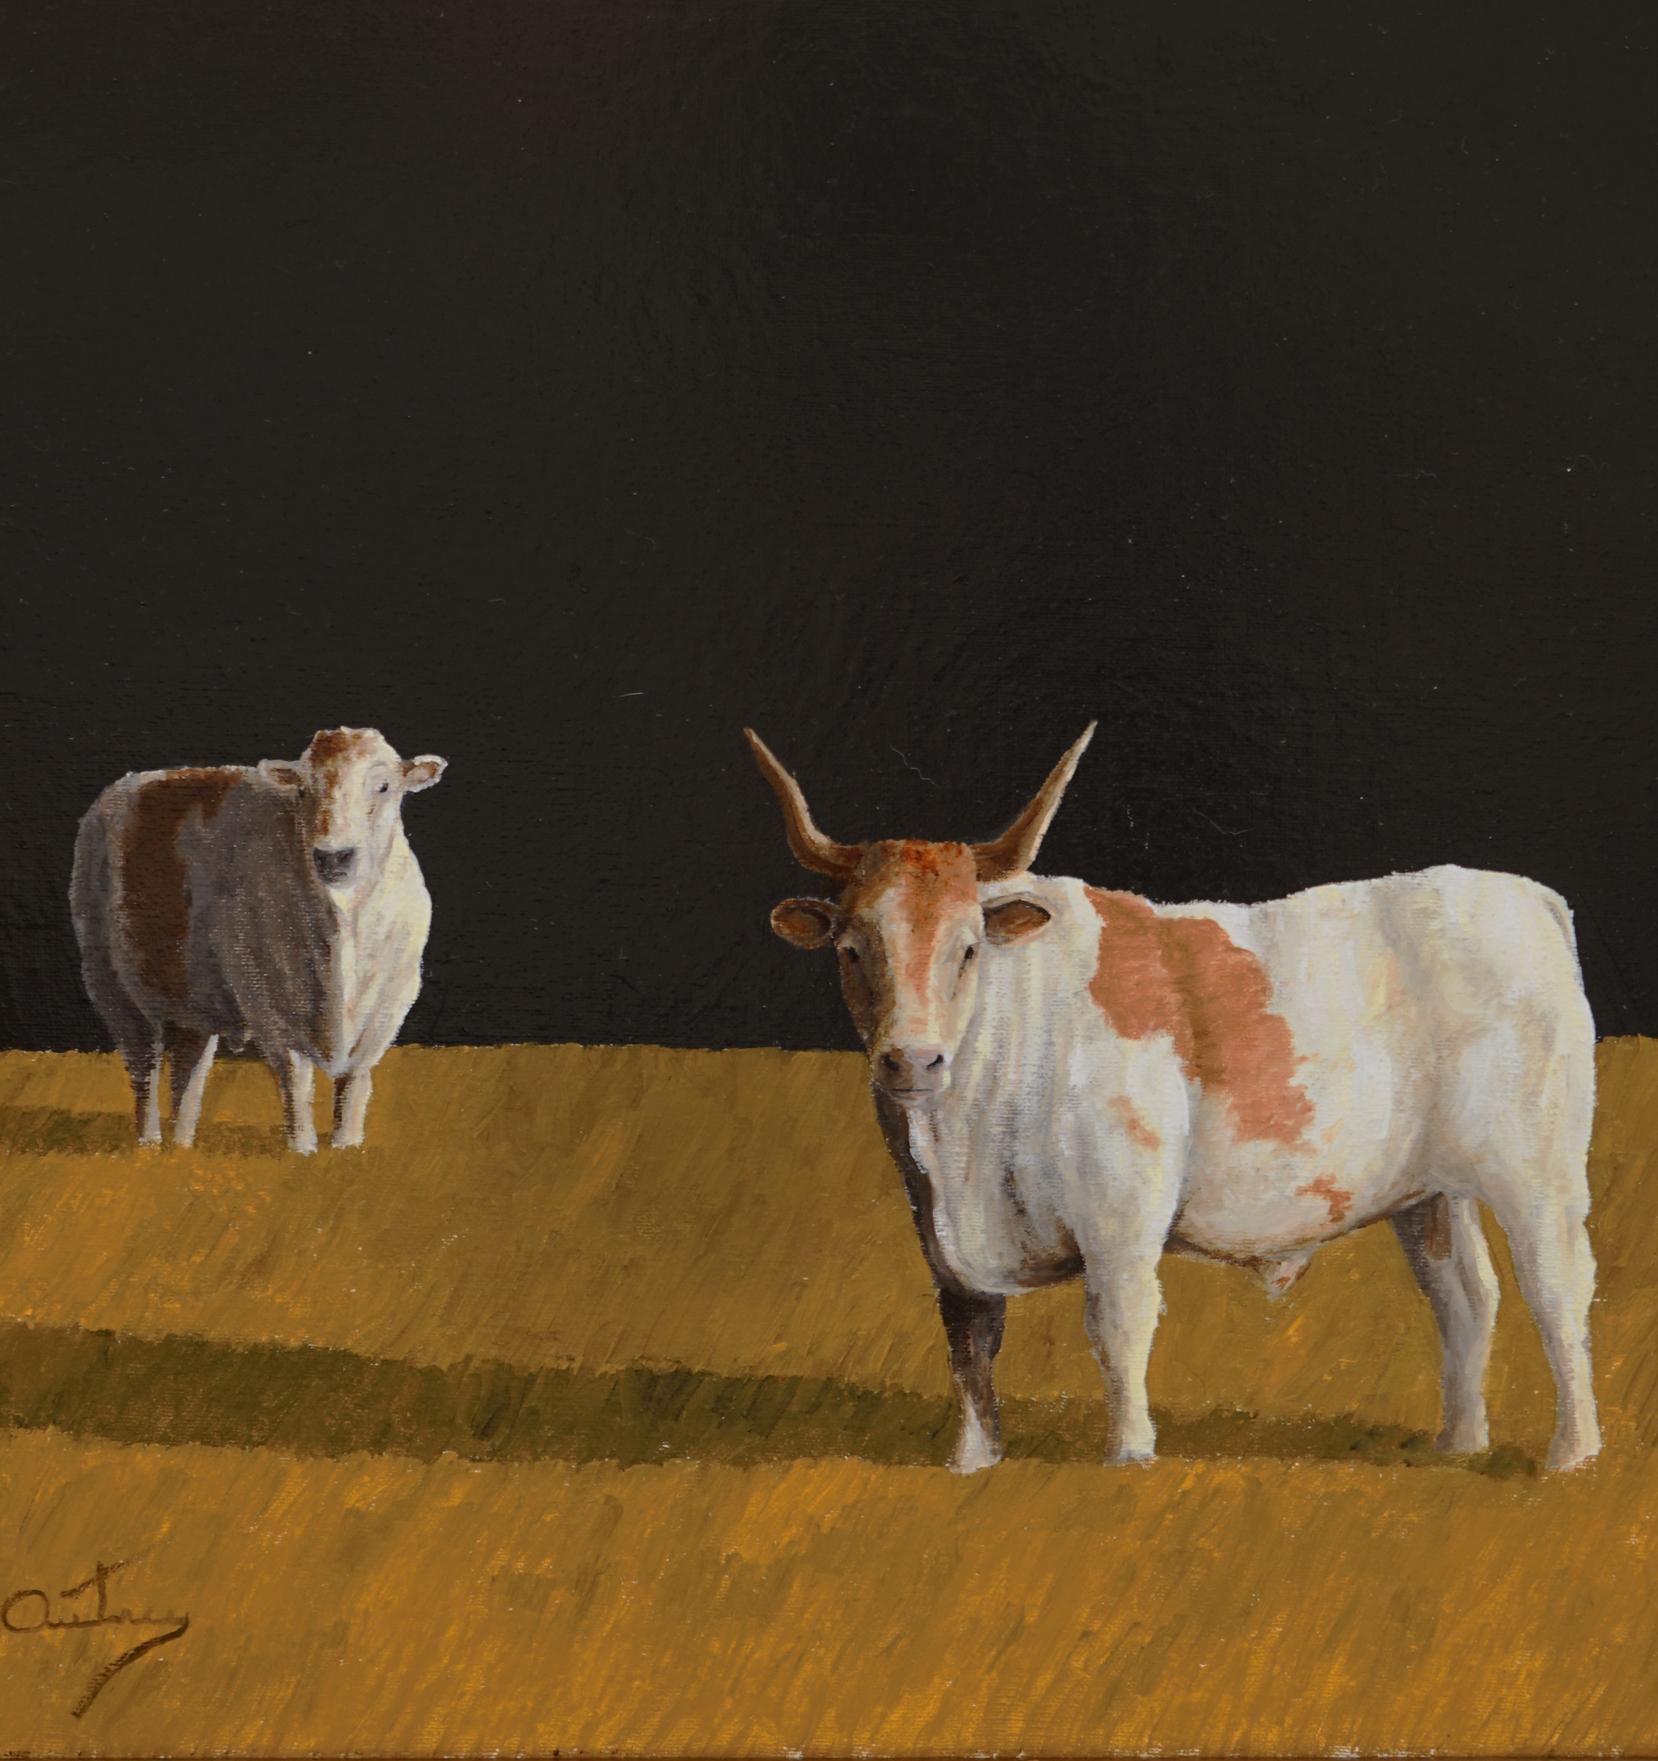   VÉRIFIEZ QUE LA LIVRAISON EST GRATUITE À LA CAISSE. 
Couple  est une peinture à l'huile sur toile de 20 X 16 représentant un mouton et un longhorn qui ont l'air d'être en  à la recherche de quelque chose. Couple est l'œuvre de l'artiste texan Luke